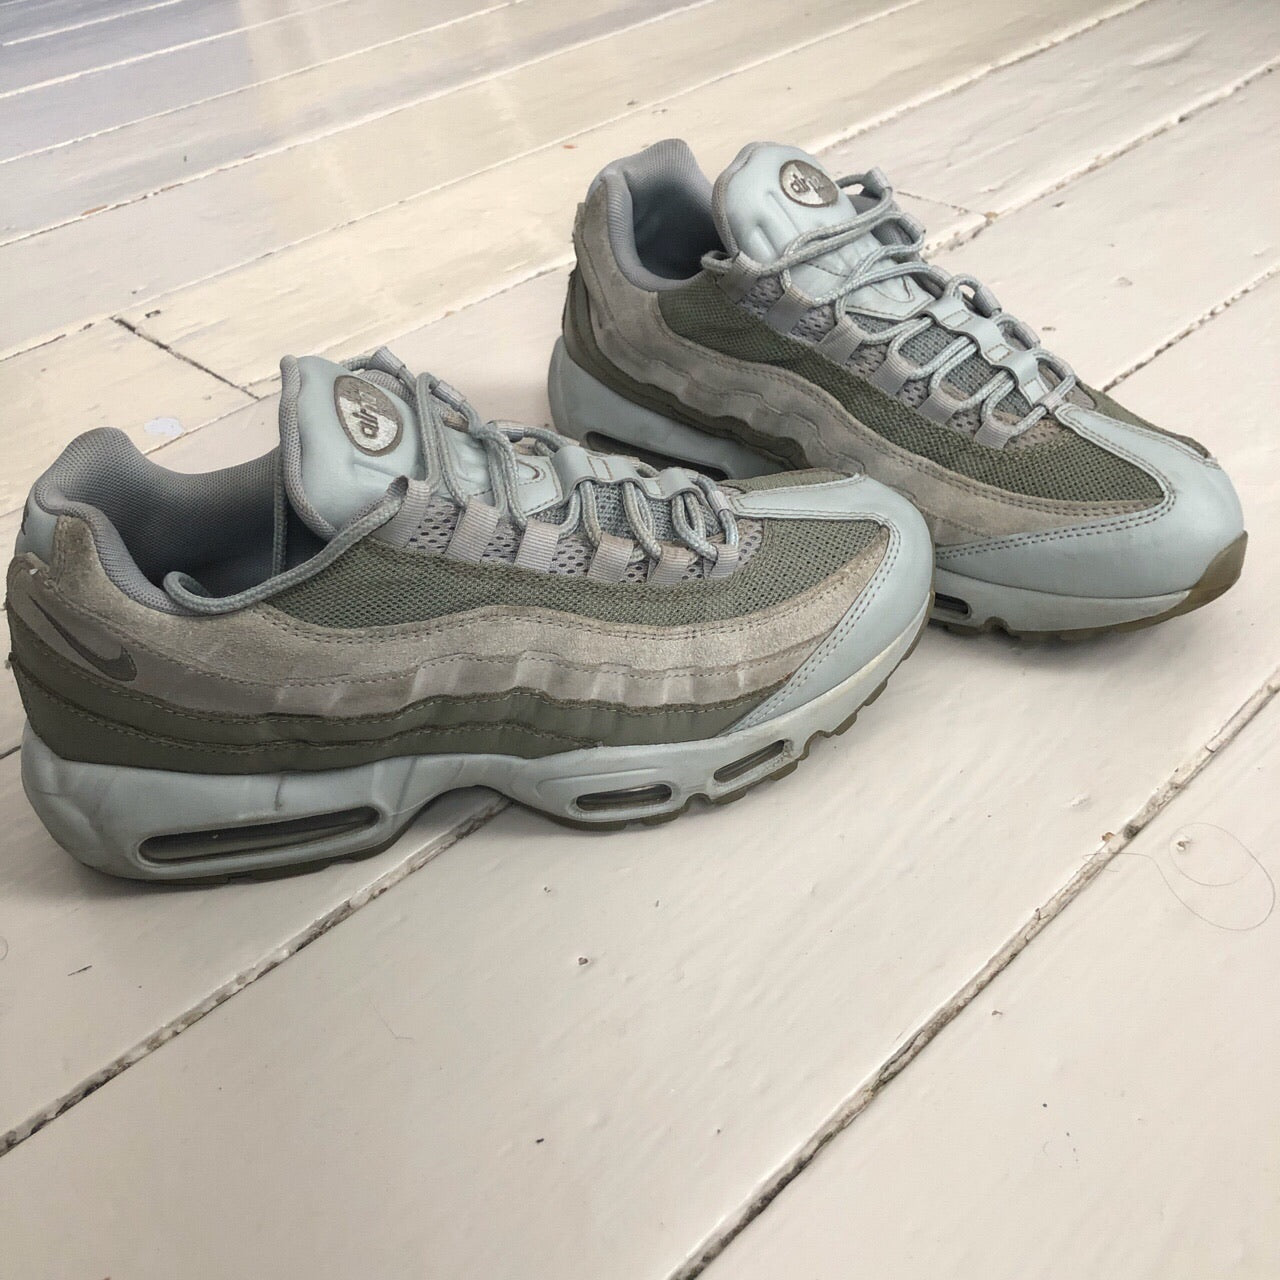 Nike Air Max 95 Grey and Khaki (UK 10)